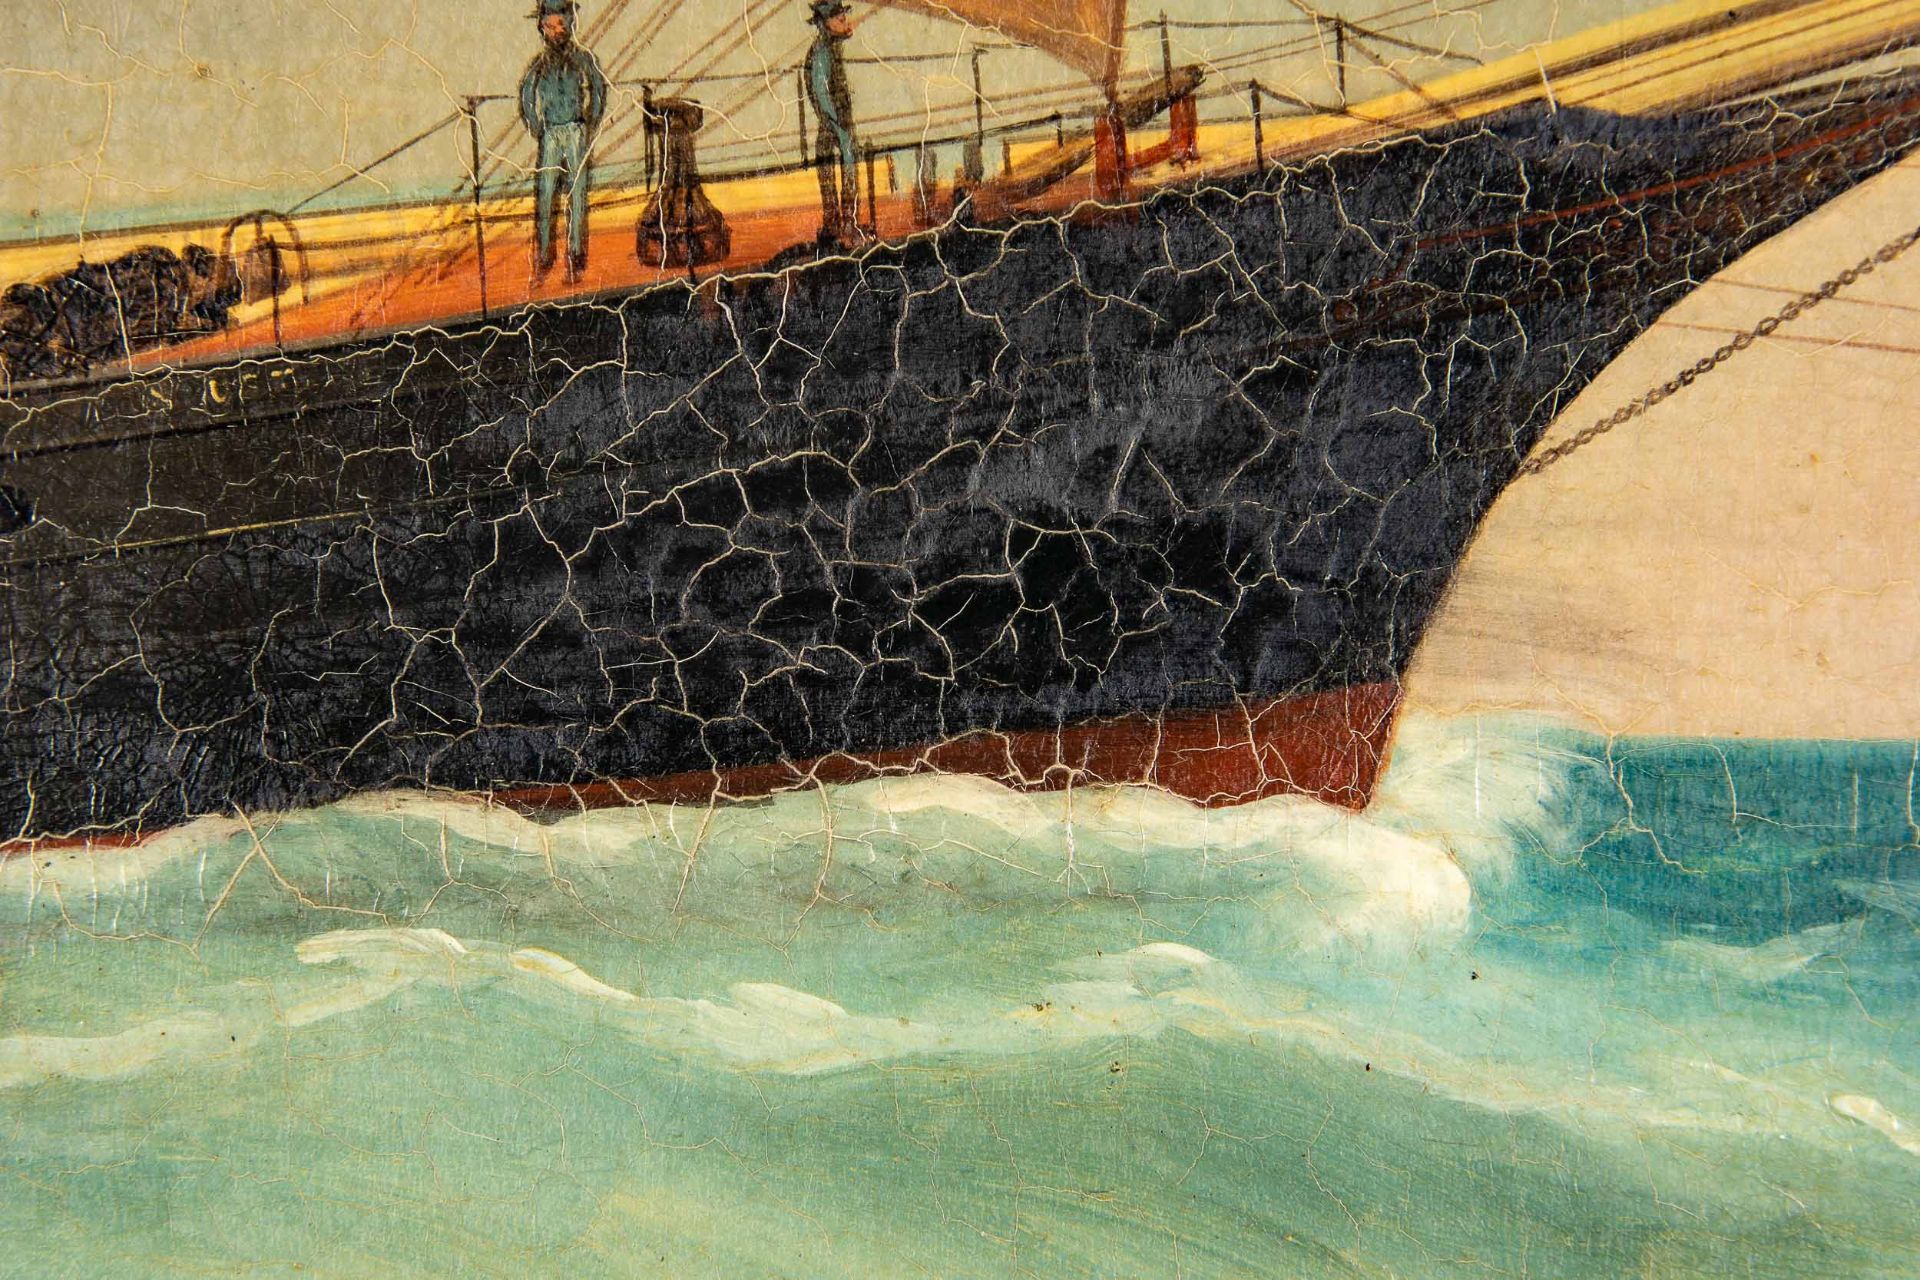 Kapitänsbild des Vollschiffes "Industrie" (1872 in Holland gebaut), qualitativ hochwertiges Gemälde - Image 16 of 24